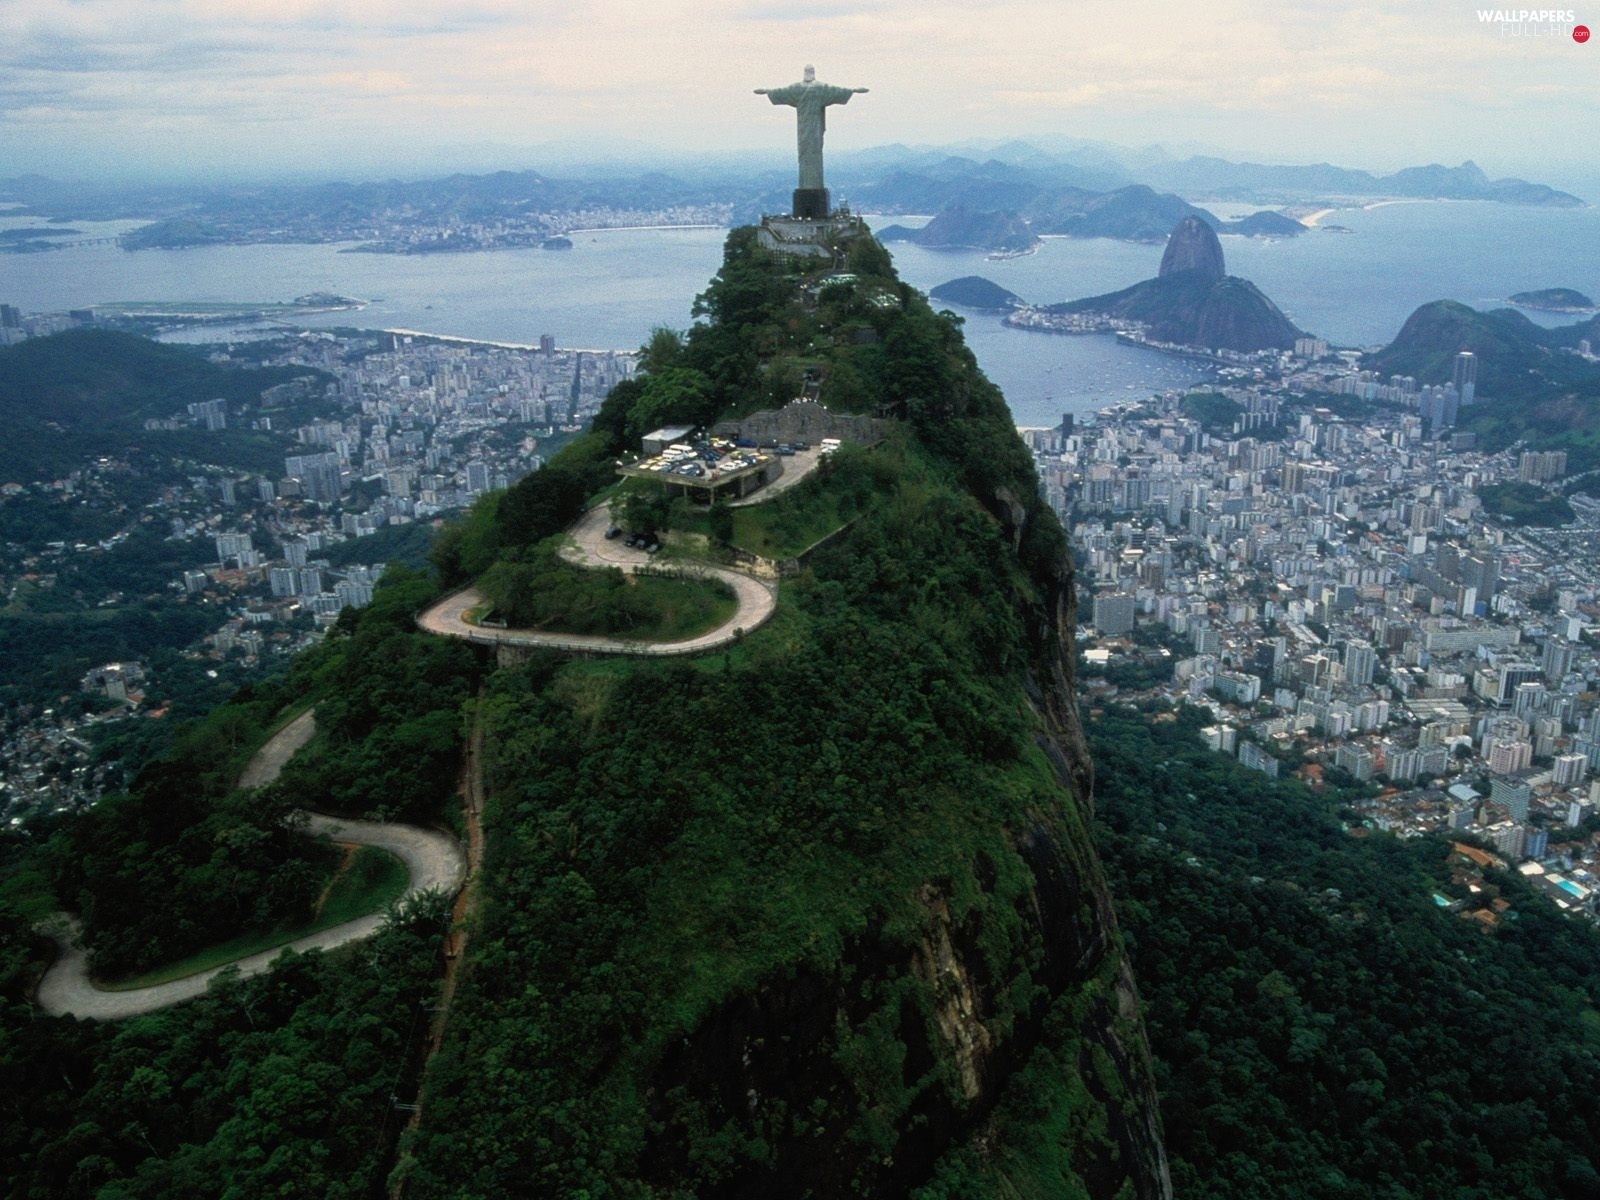 Statue of Christ the Redeemer, Brazil, Rio de Janeiro - Full HD Wallpapers:  1600x1200